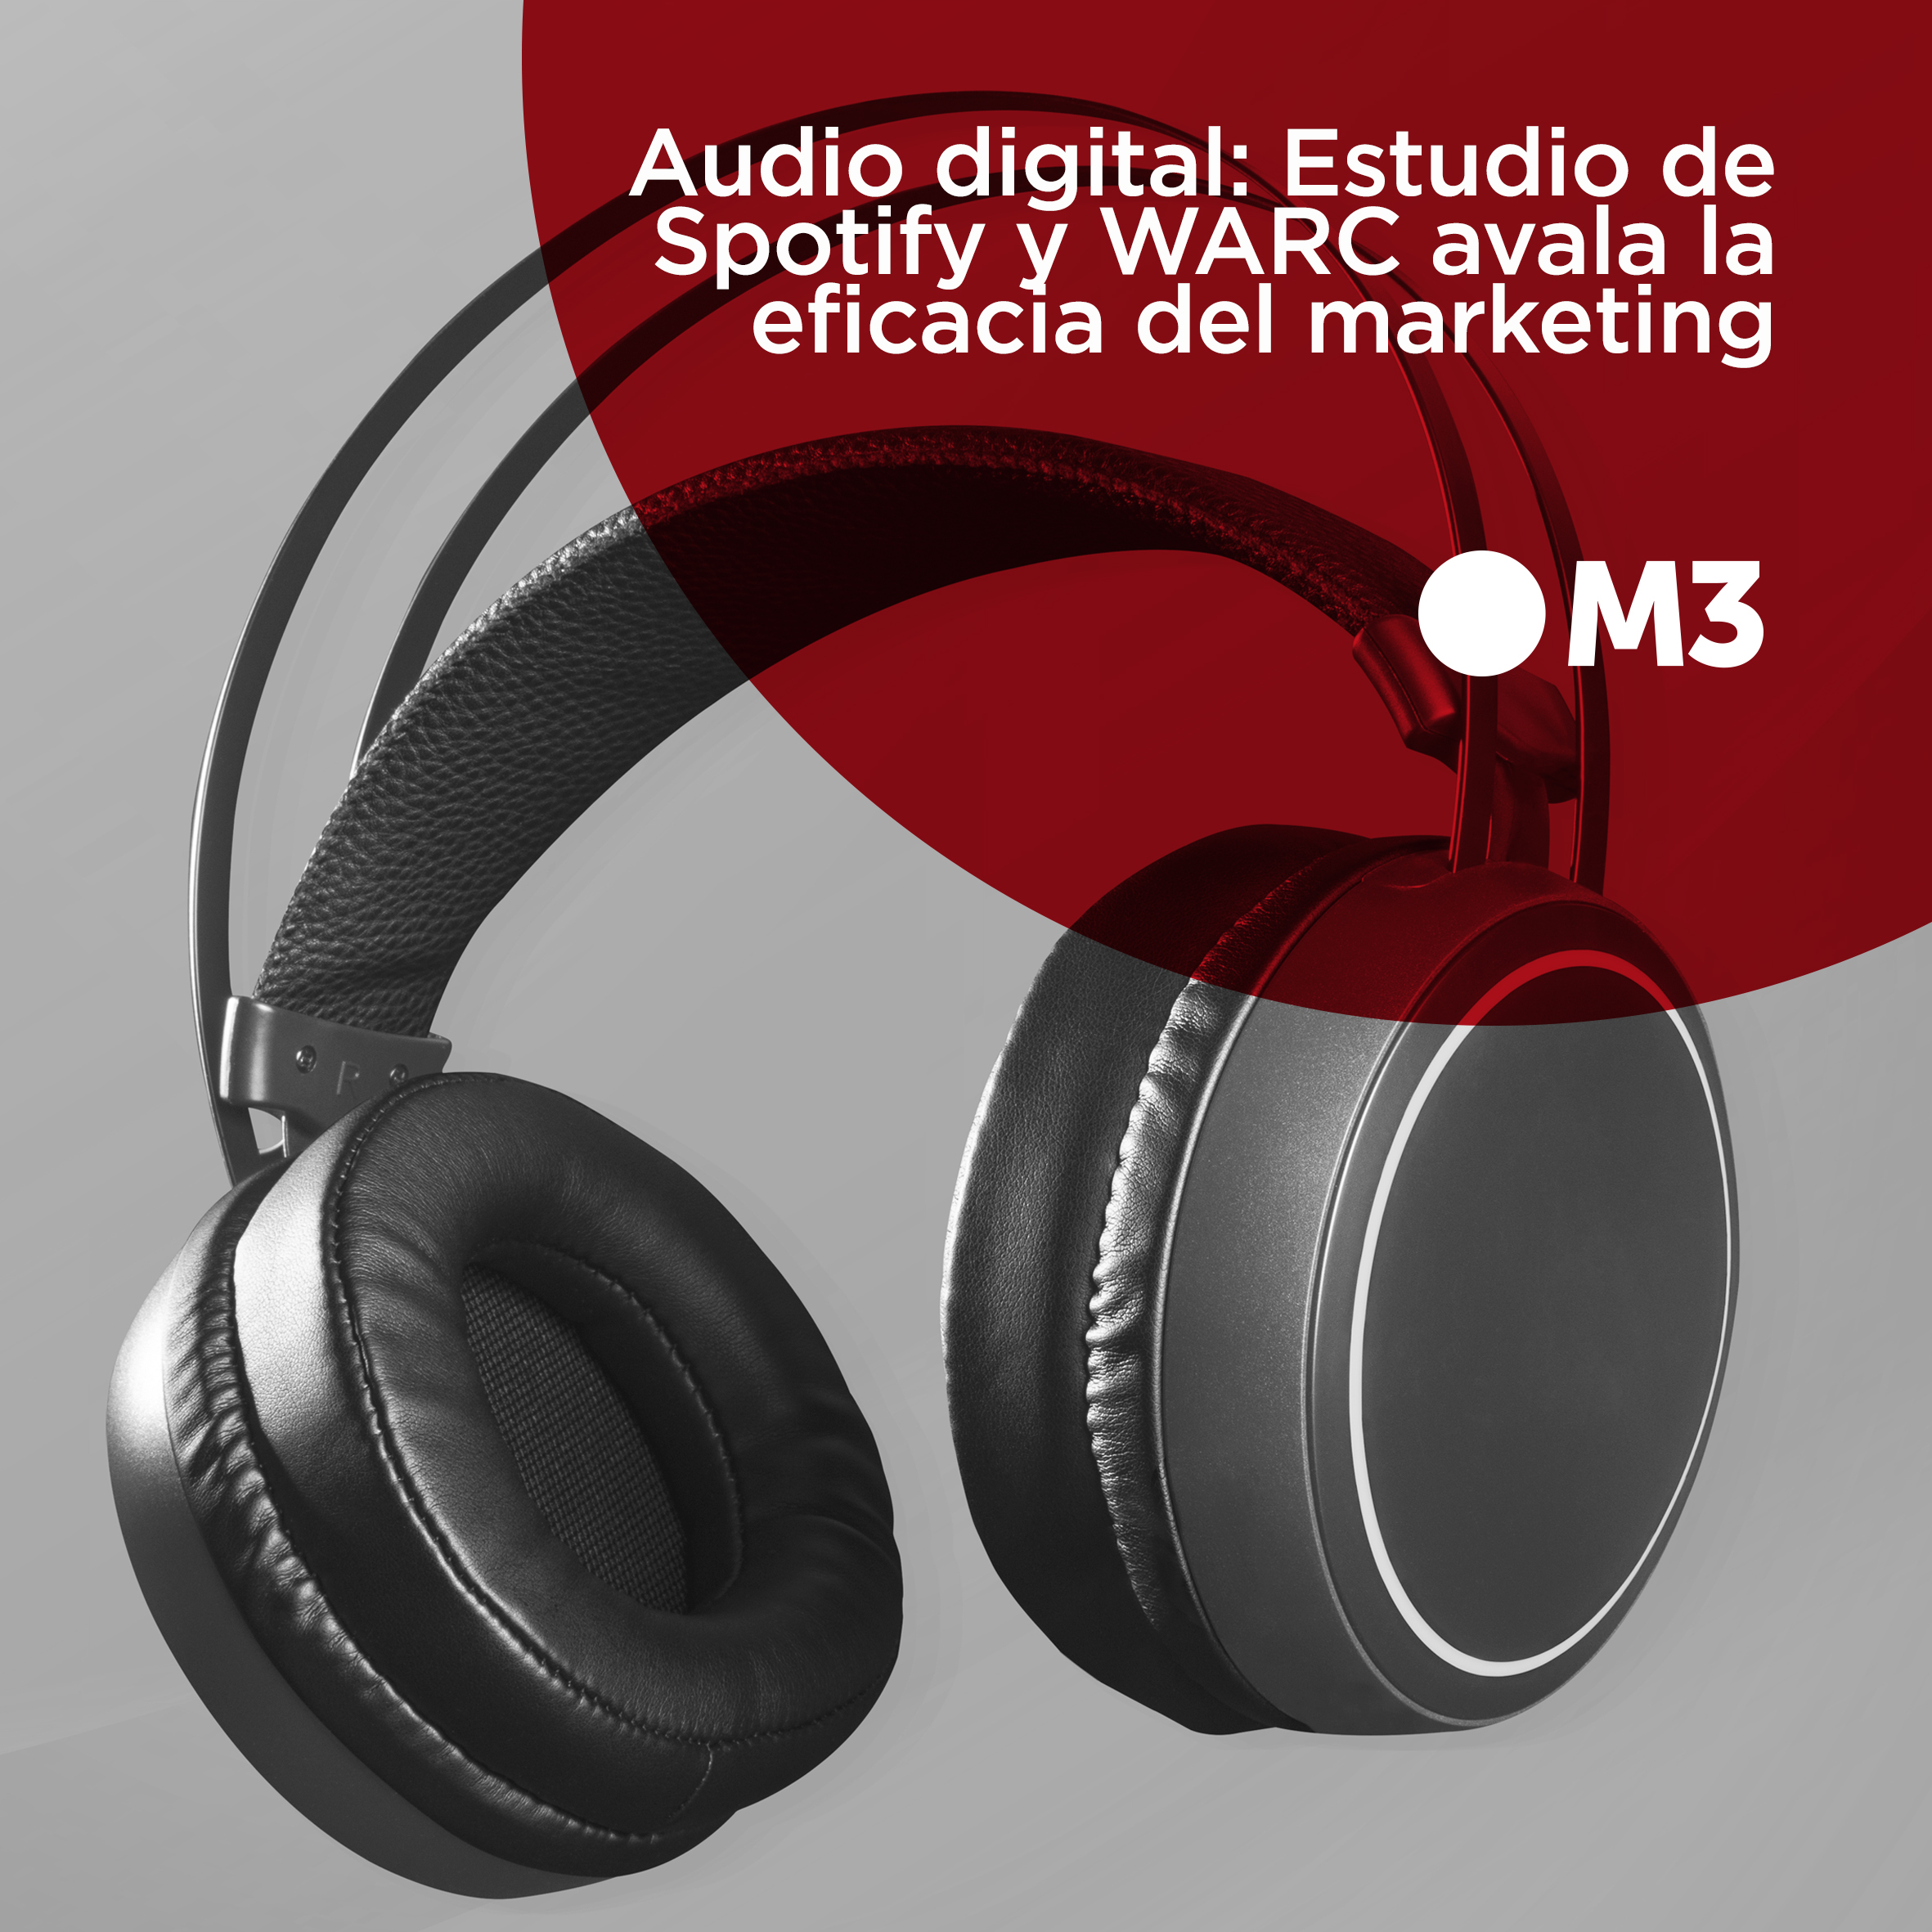 Audio digital: Estudio de Spotify y WARC avala la eficacia del marketing